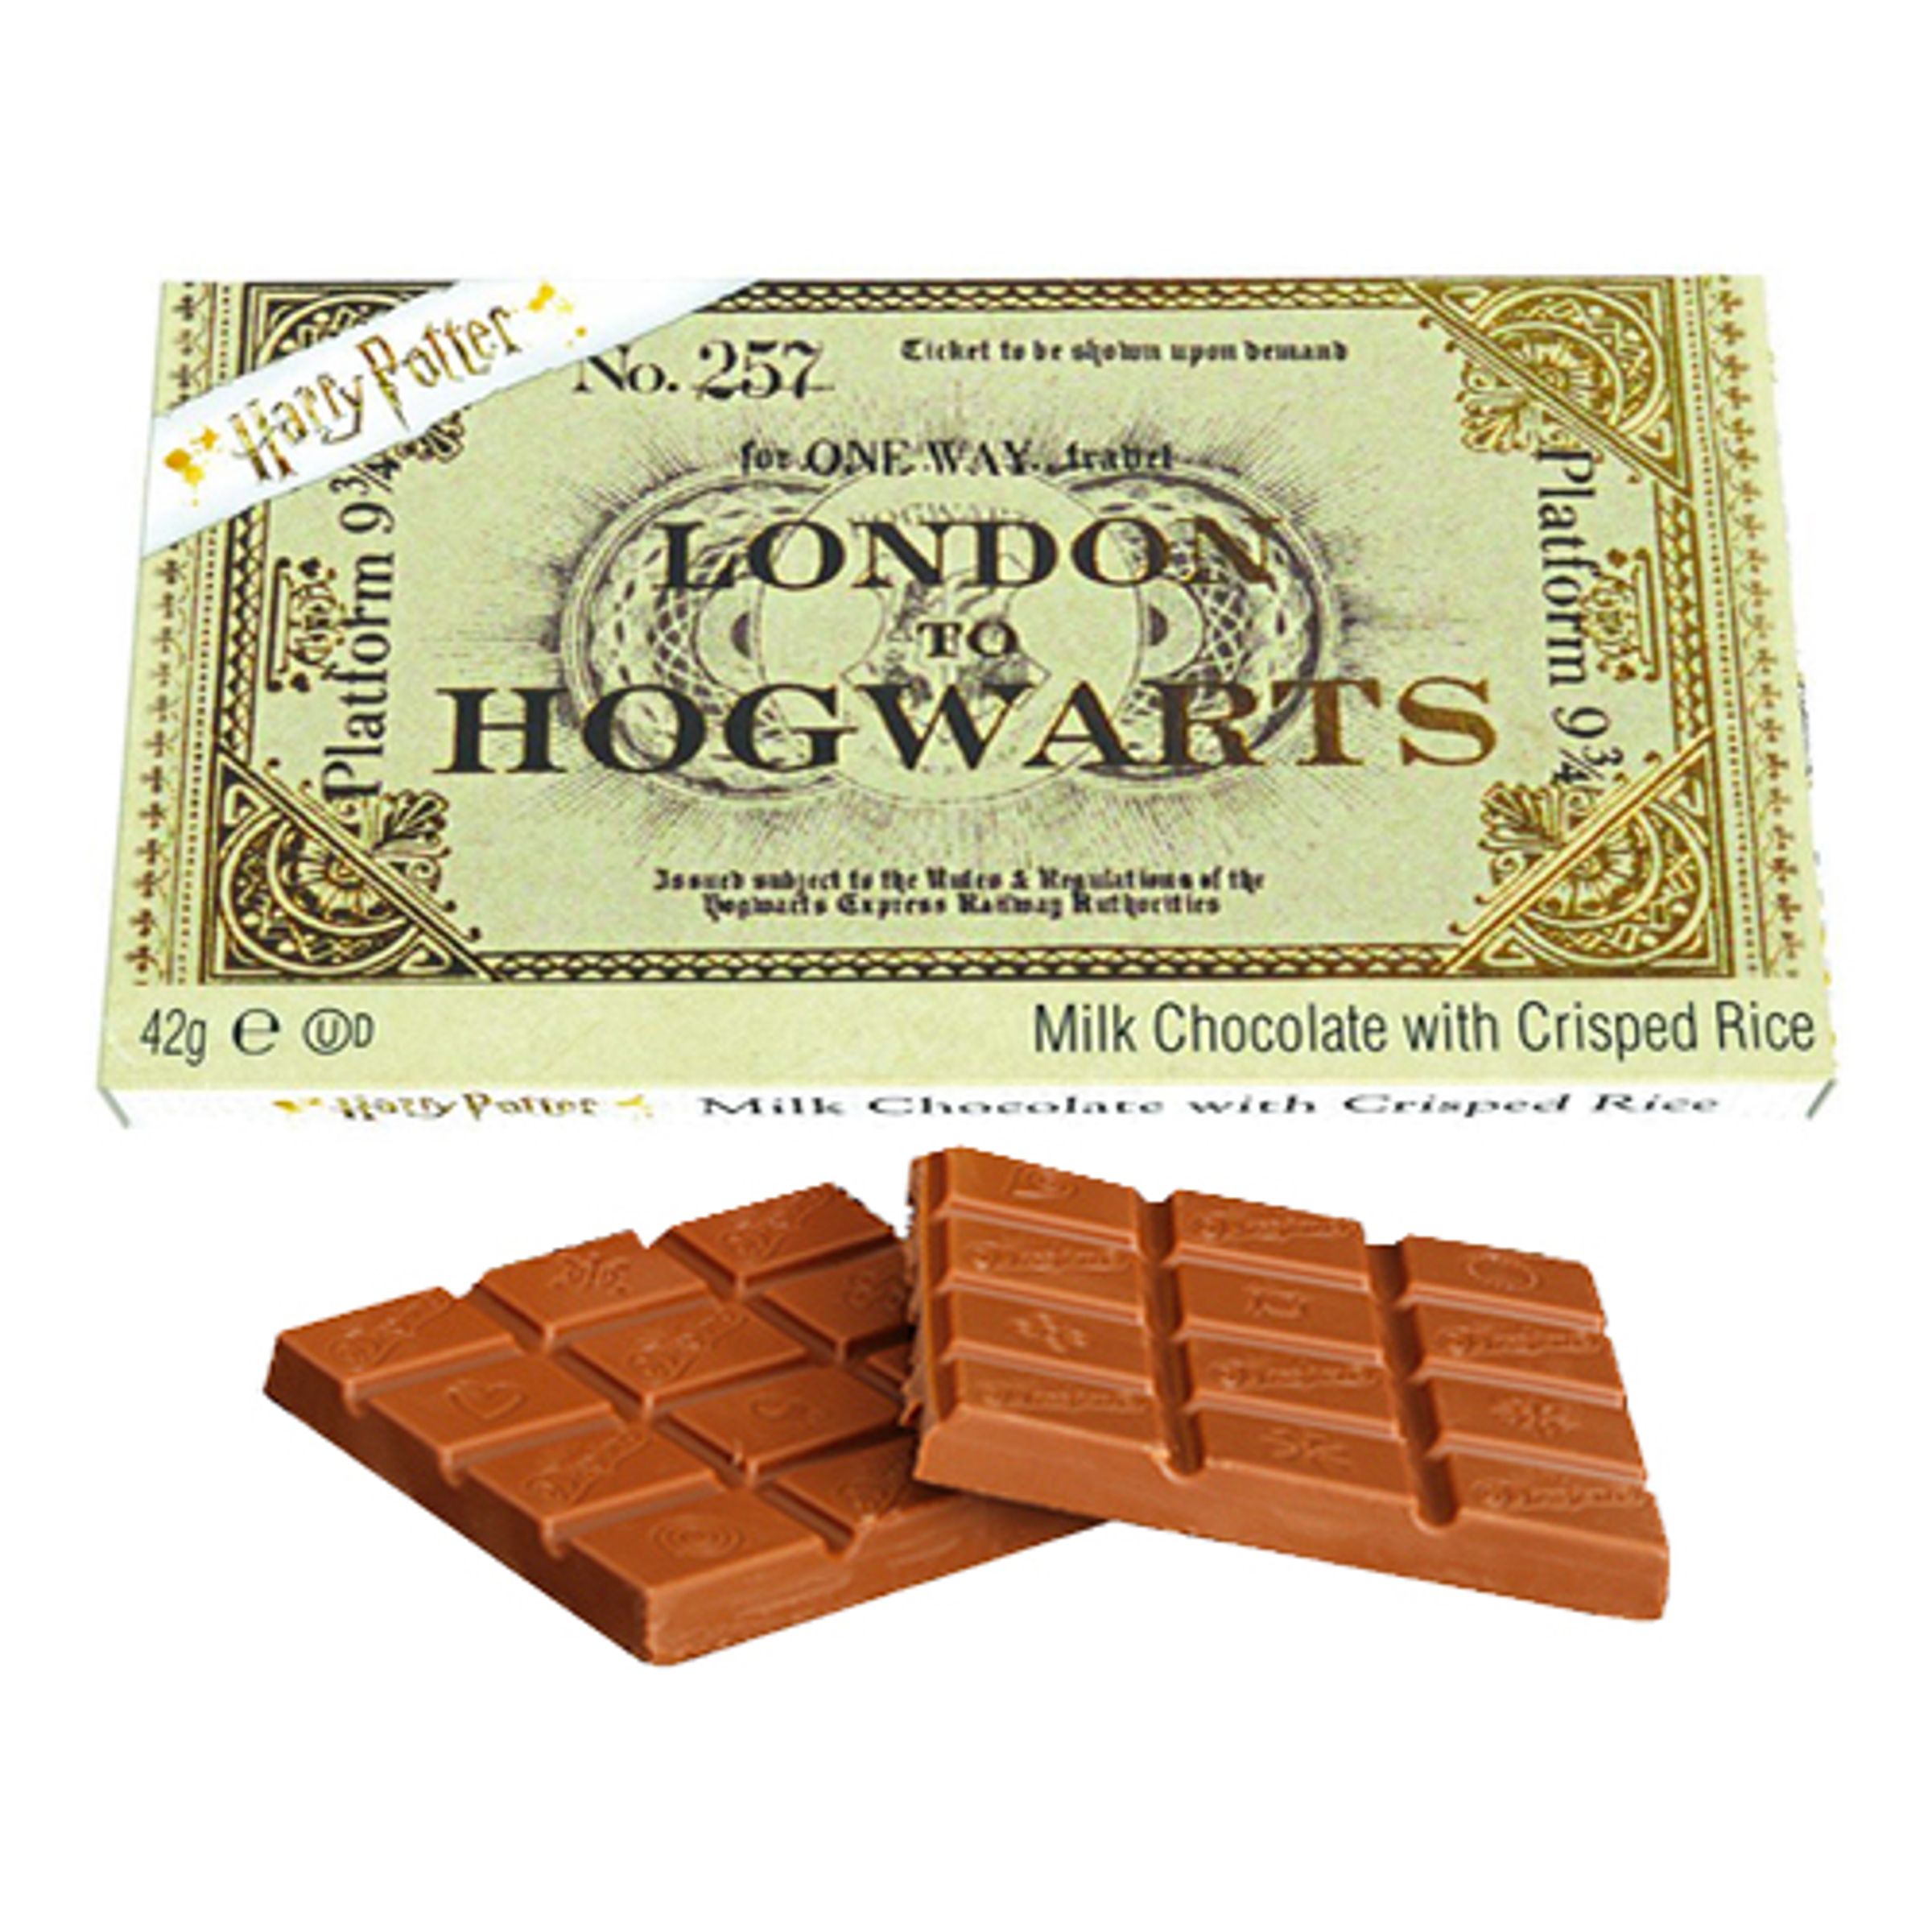 Biljett till Hogwarts Chokladkaka